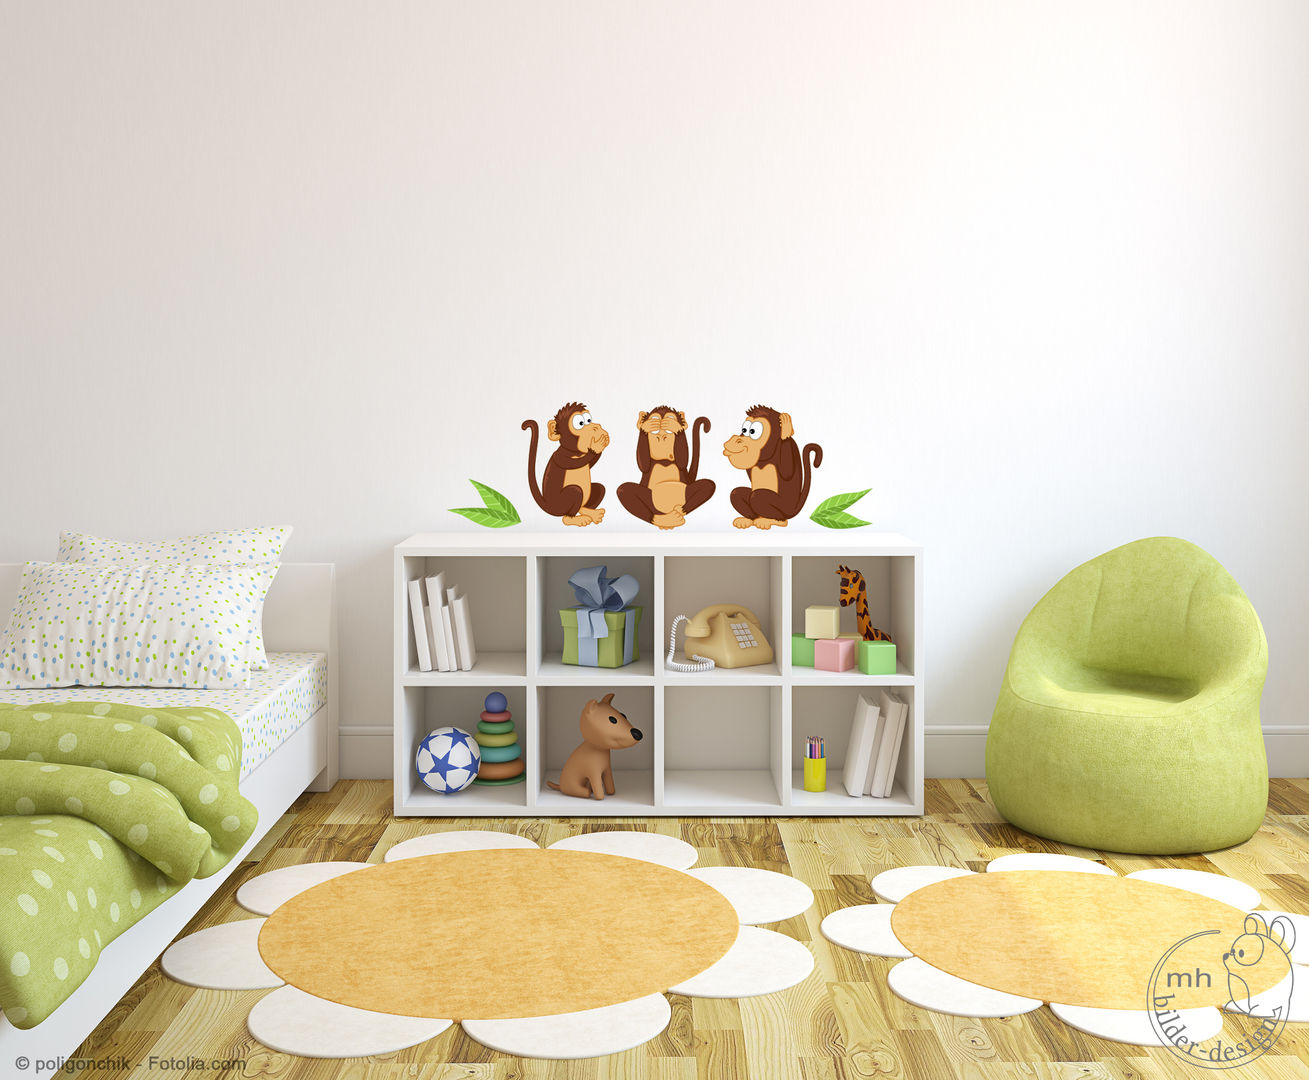 Wandtattoos - Dschungel im Kinderzimmer, MHBilder-Design MHBilder-Design Nursery/kid’s room Synthetic Brown Accessories & decoration